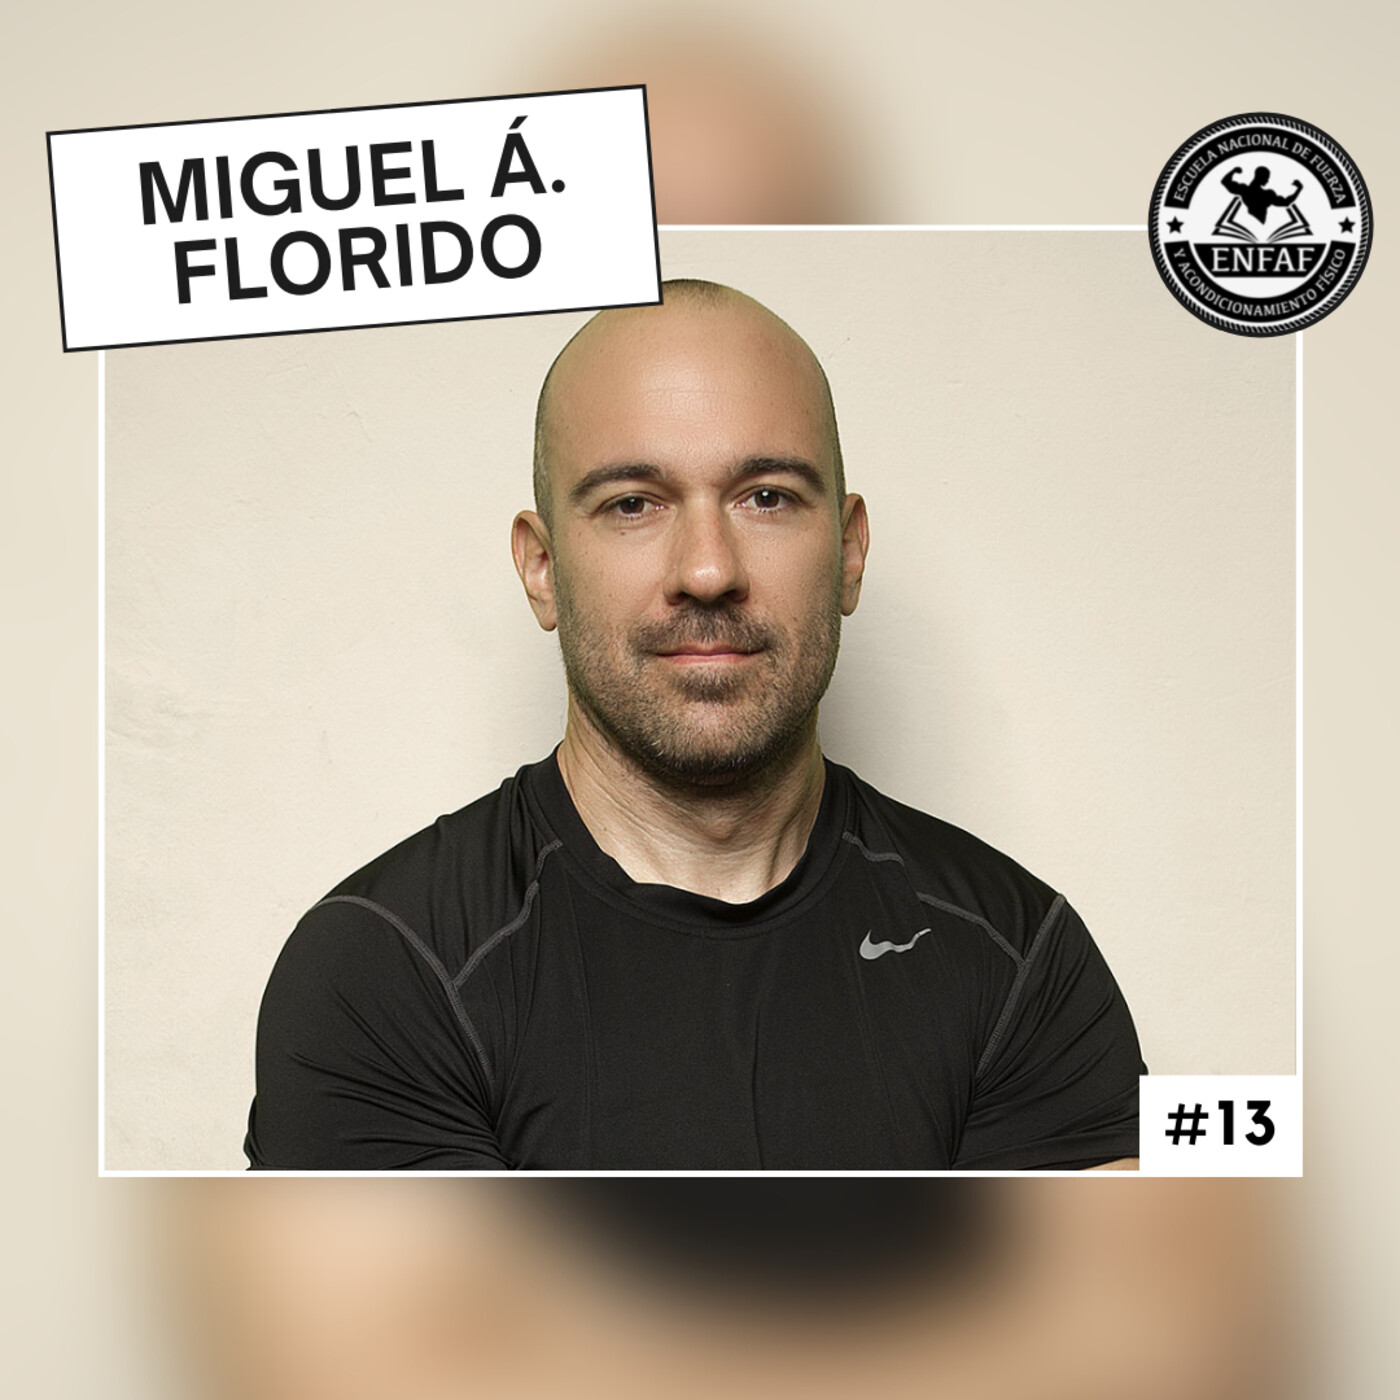 #13. Asesoramiento Dietético en Deportes de Fuerza, con Miguel Ángel Florido